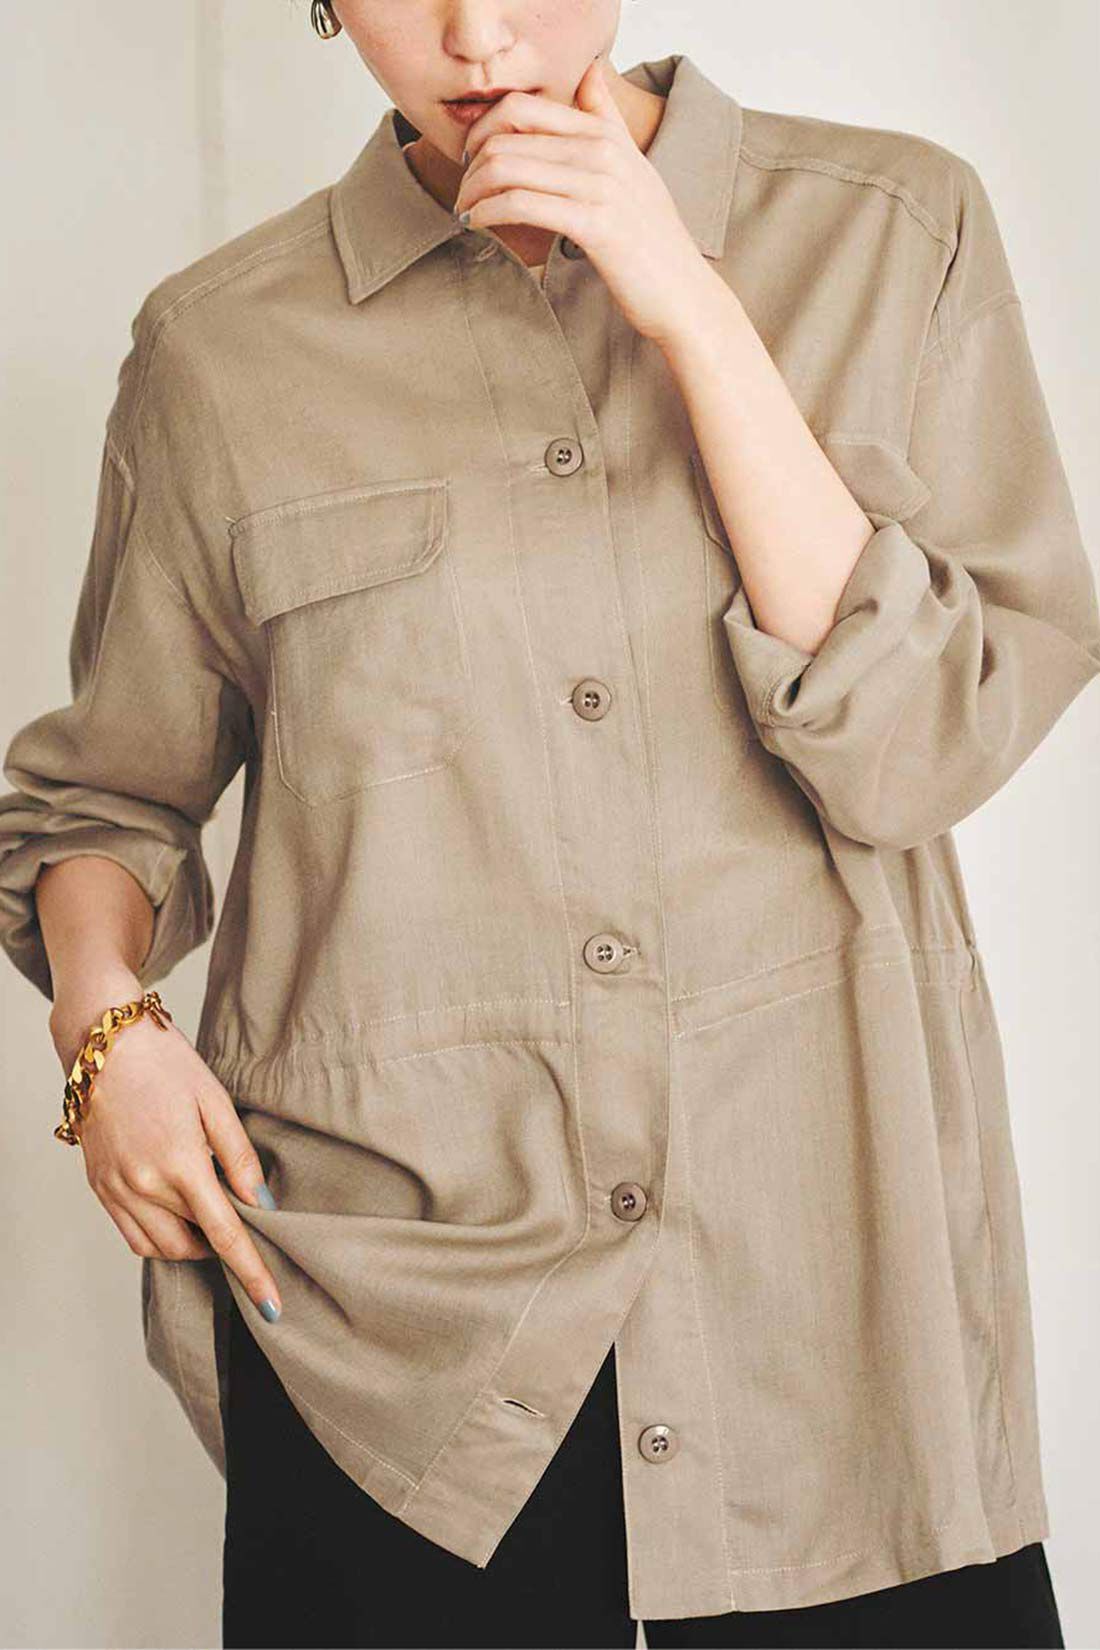 Real Stock|IEDIT[イディット]　リネン混素材のミリタリーシャツジャケット〈カーキグリーン〉|※着用イメージです。お届けするカラーとは異なります。